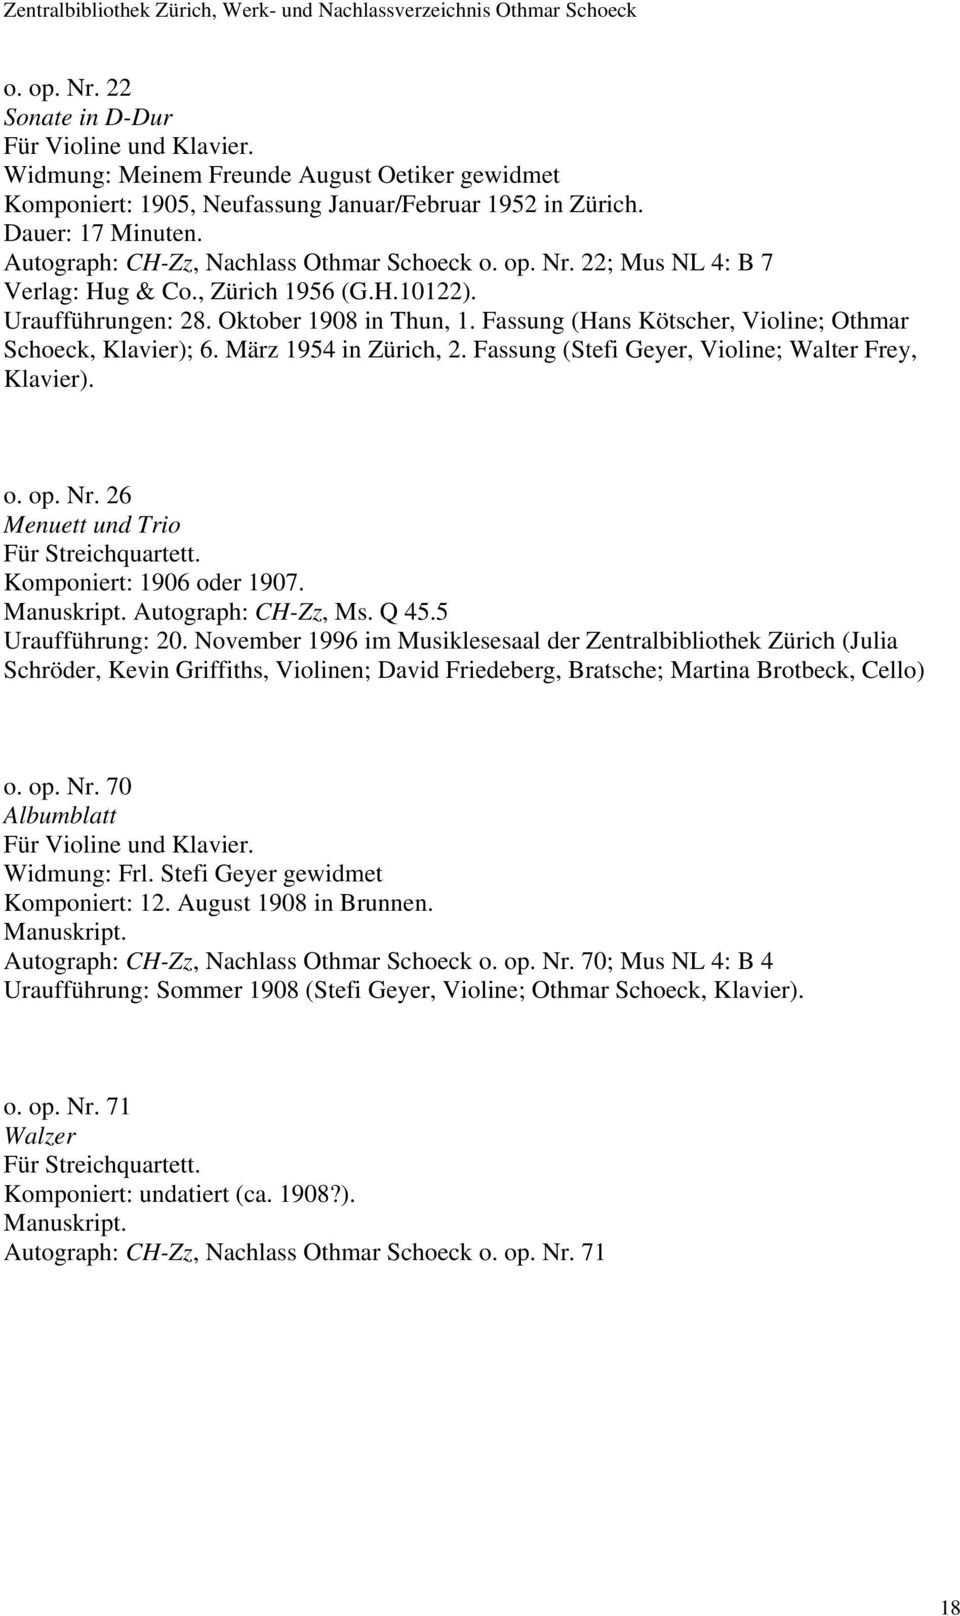 Fassung (Hans Kötscher, Violine; Othmar Schoeck, Klavier); 6. März 1954 in Zürich, 2. Fassung (Stefi Geyer, Violine; Walter Frey, Klavier). o. op. Nr. 26 Menuett und Trio Für Streichquartett.